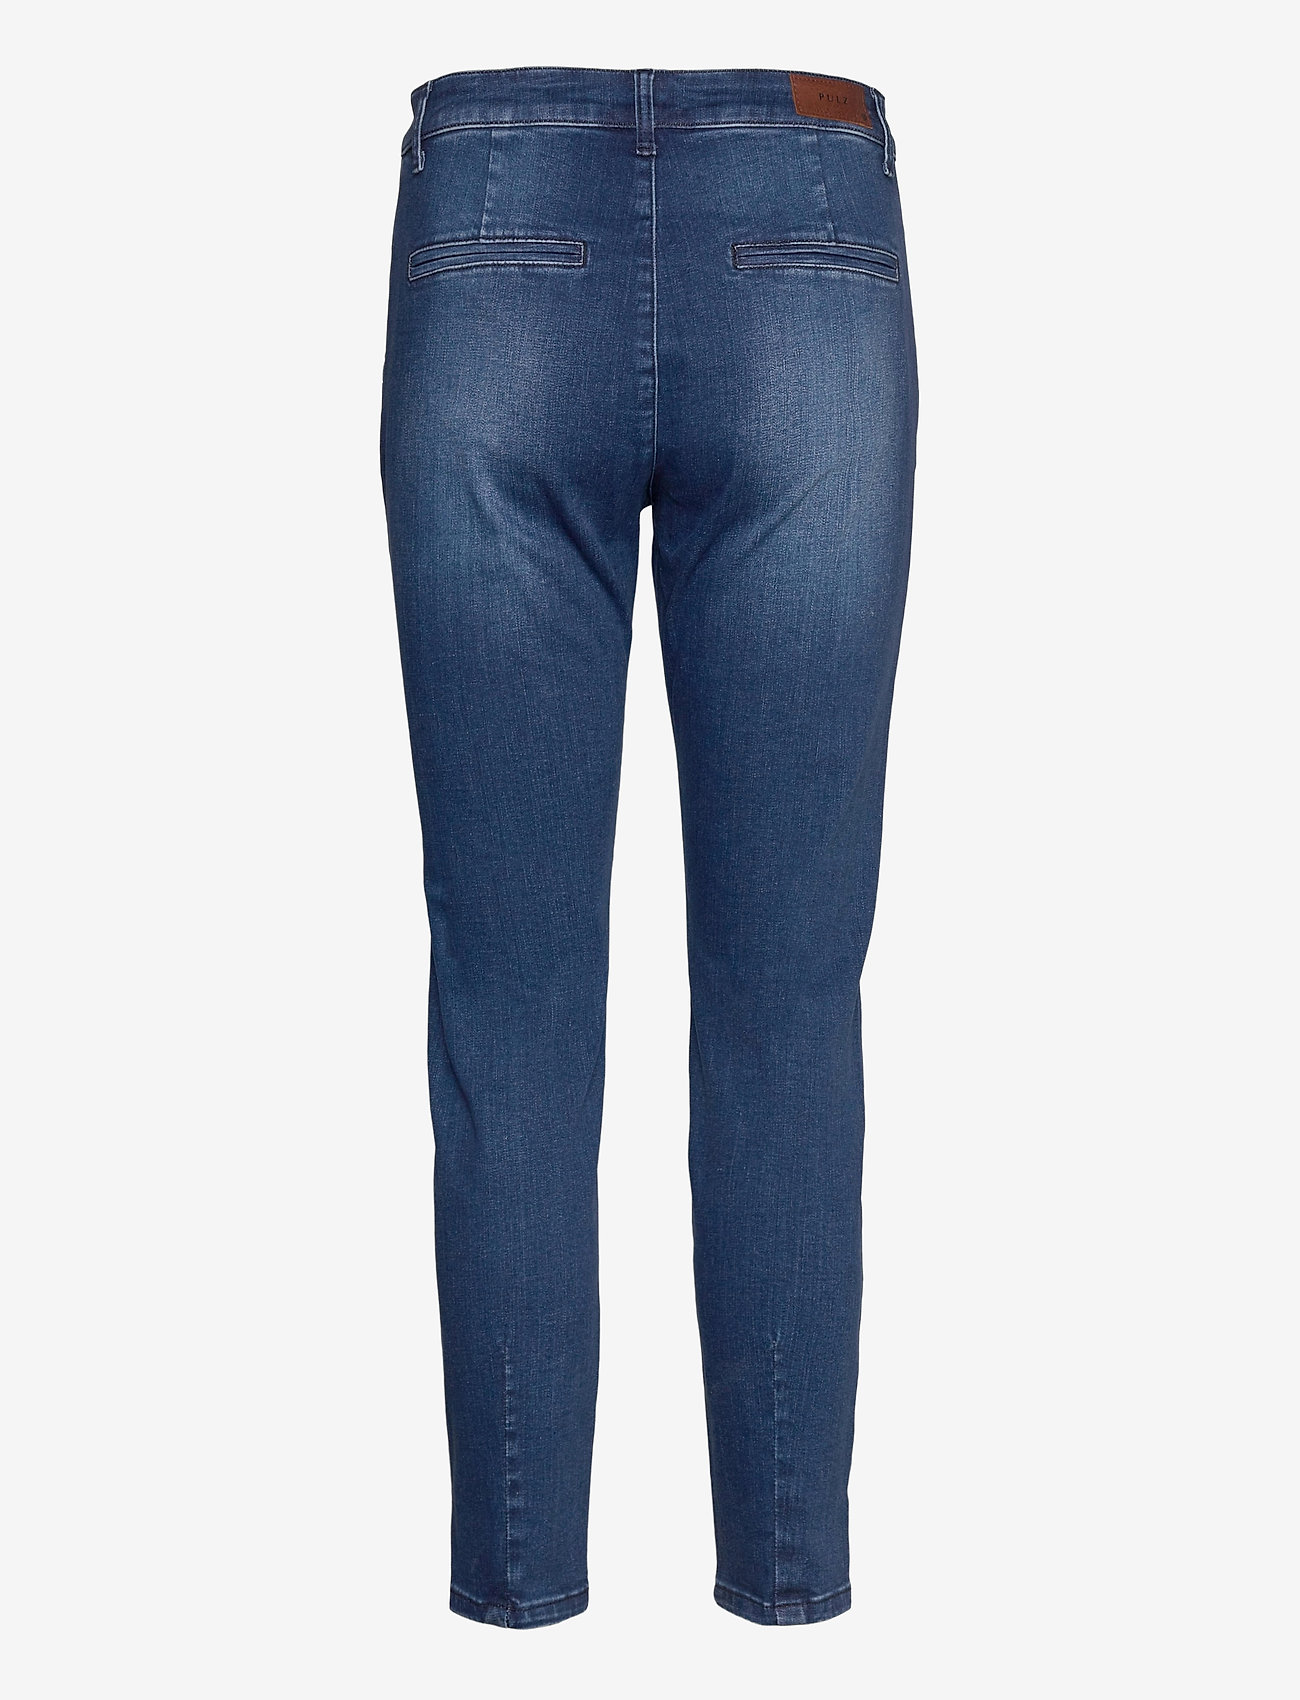 Pulz Jeans - PZCLARA Jeans - slim fit -farkut - dark blue denim - 1